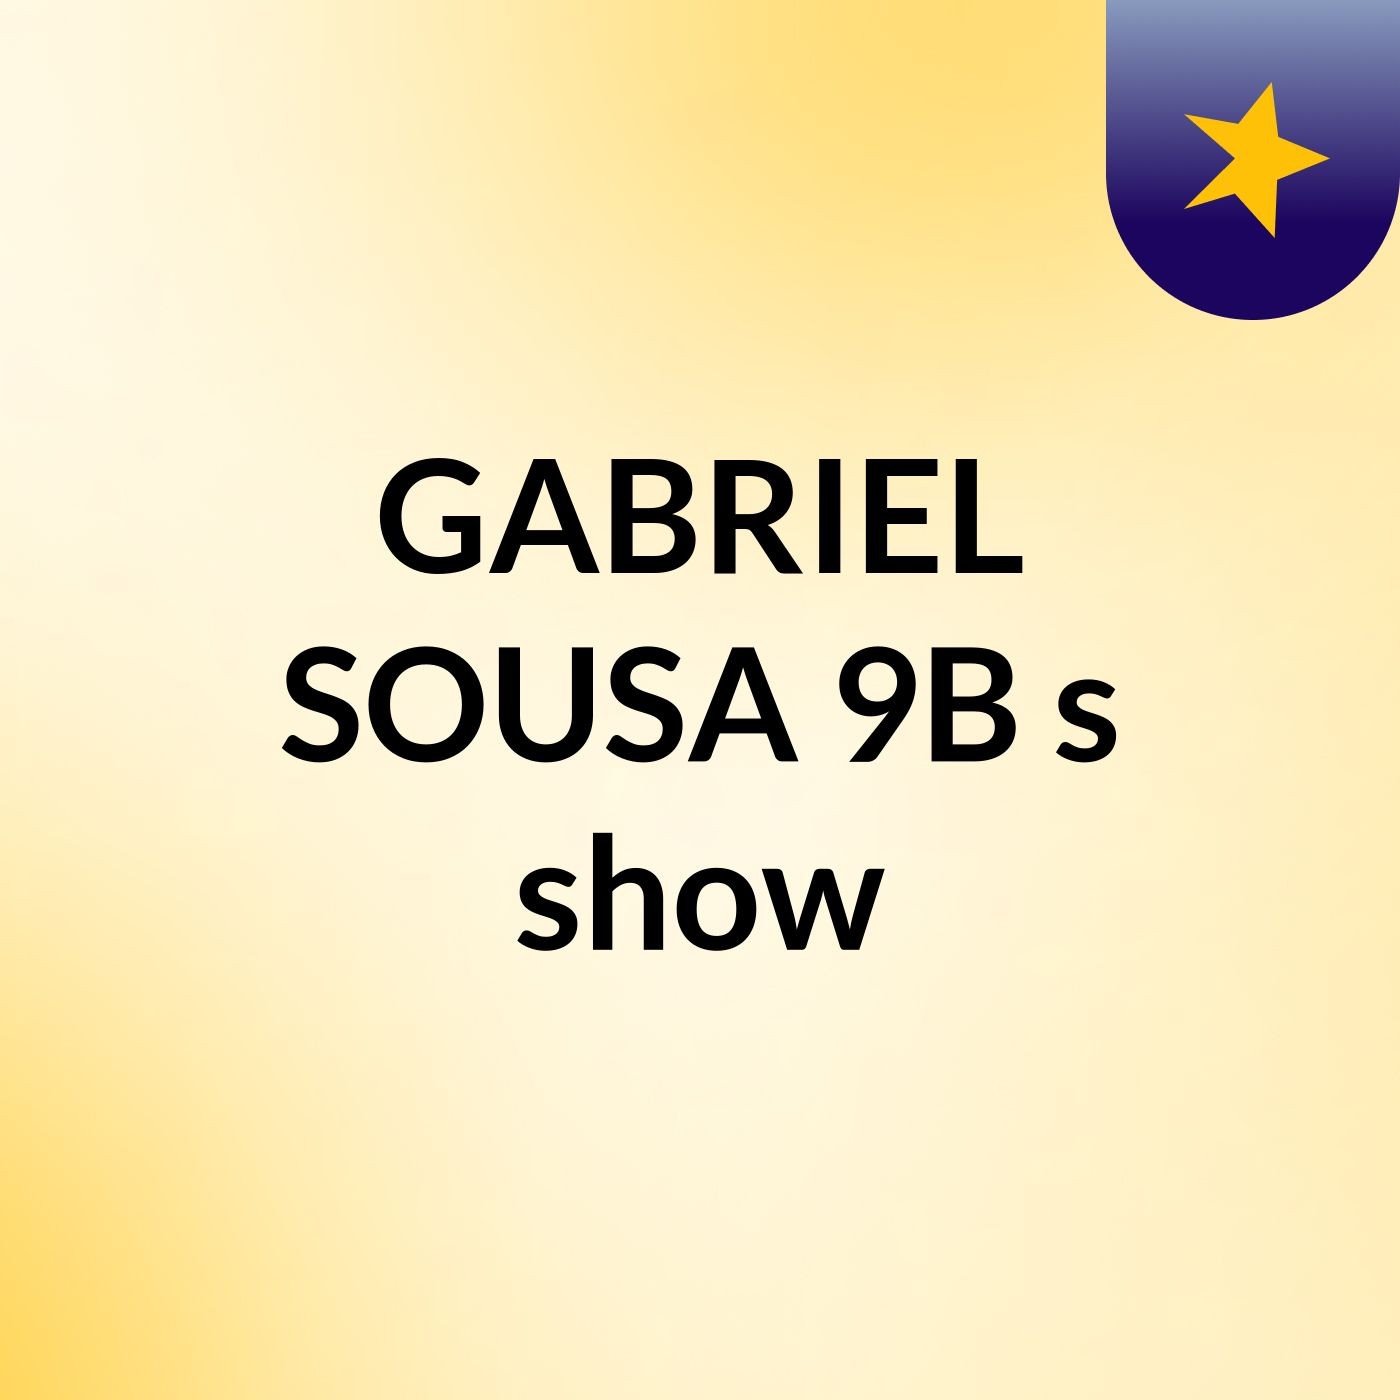 GABRIEL SOUSA 9B's show